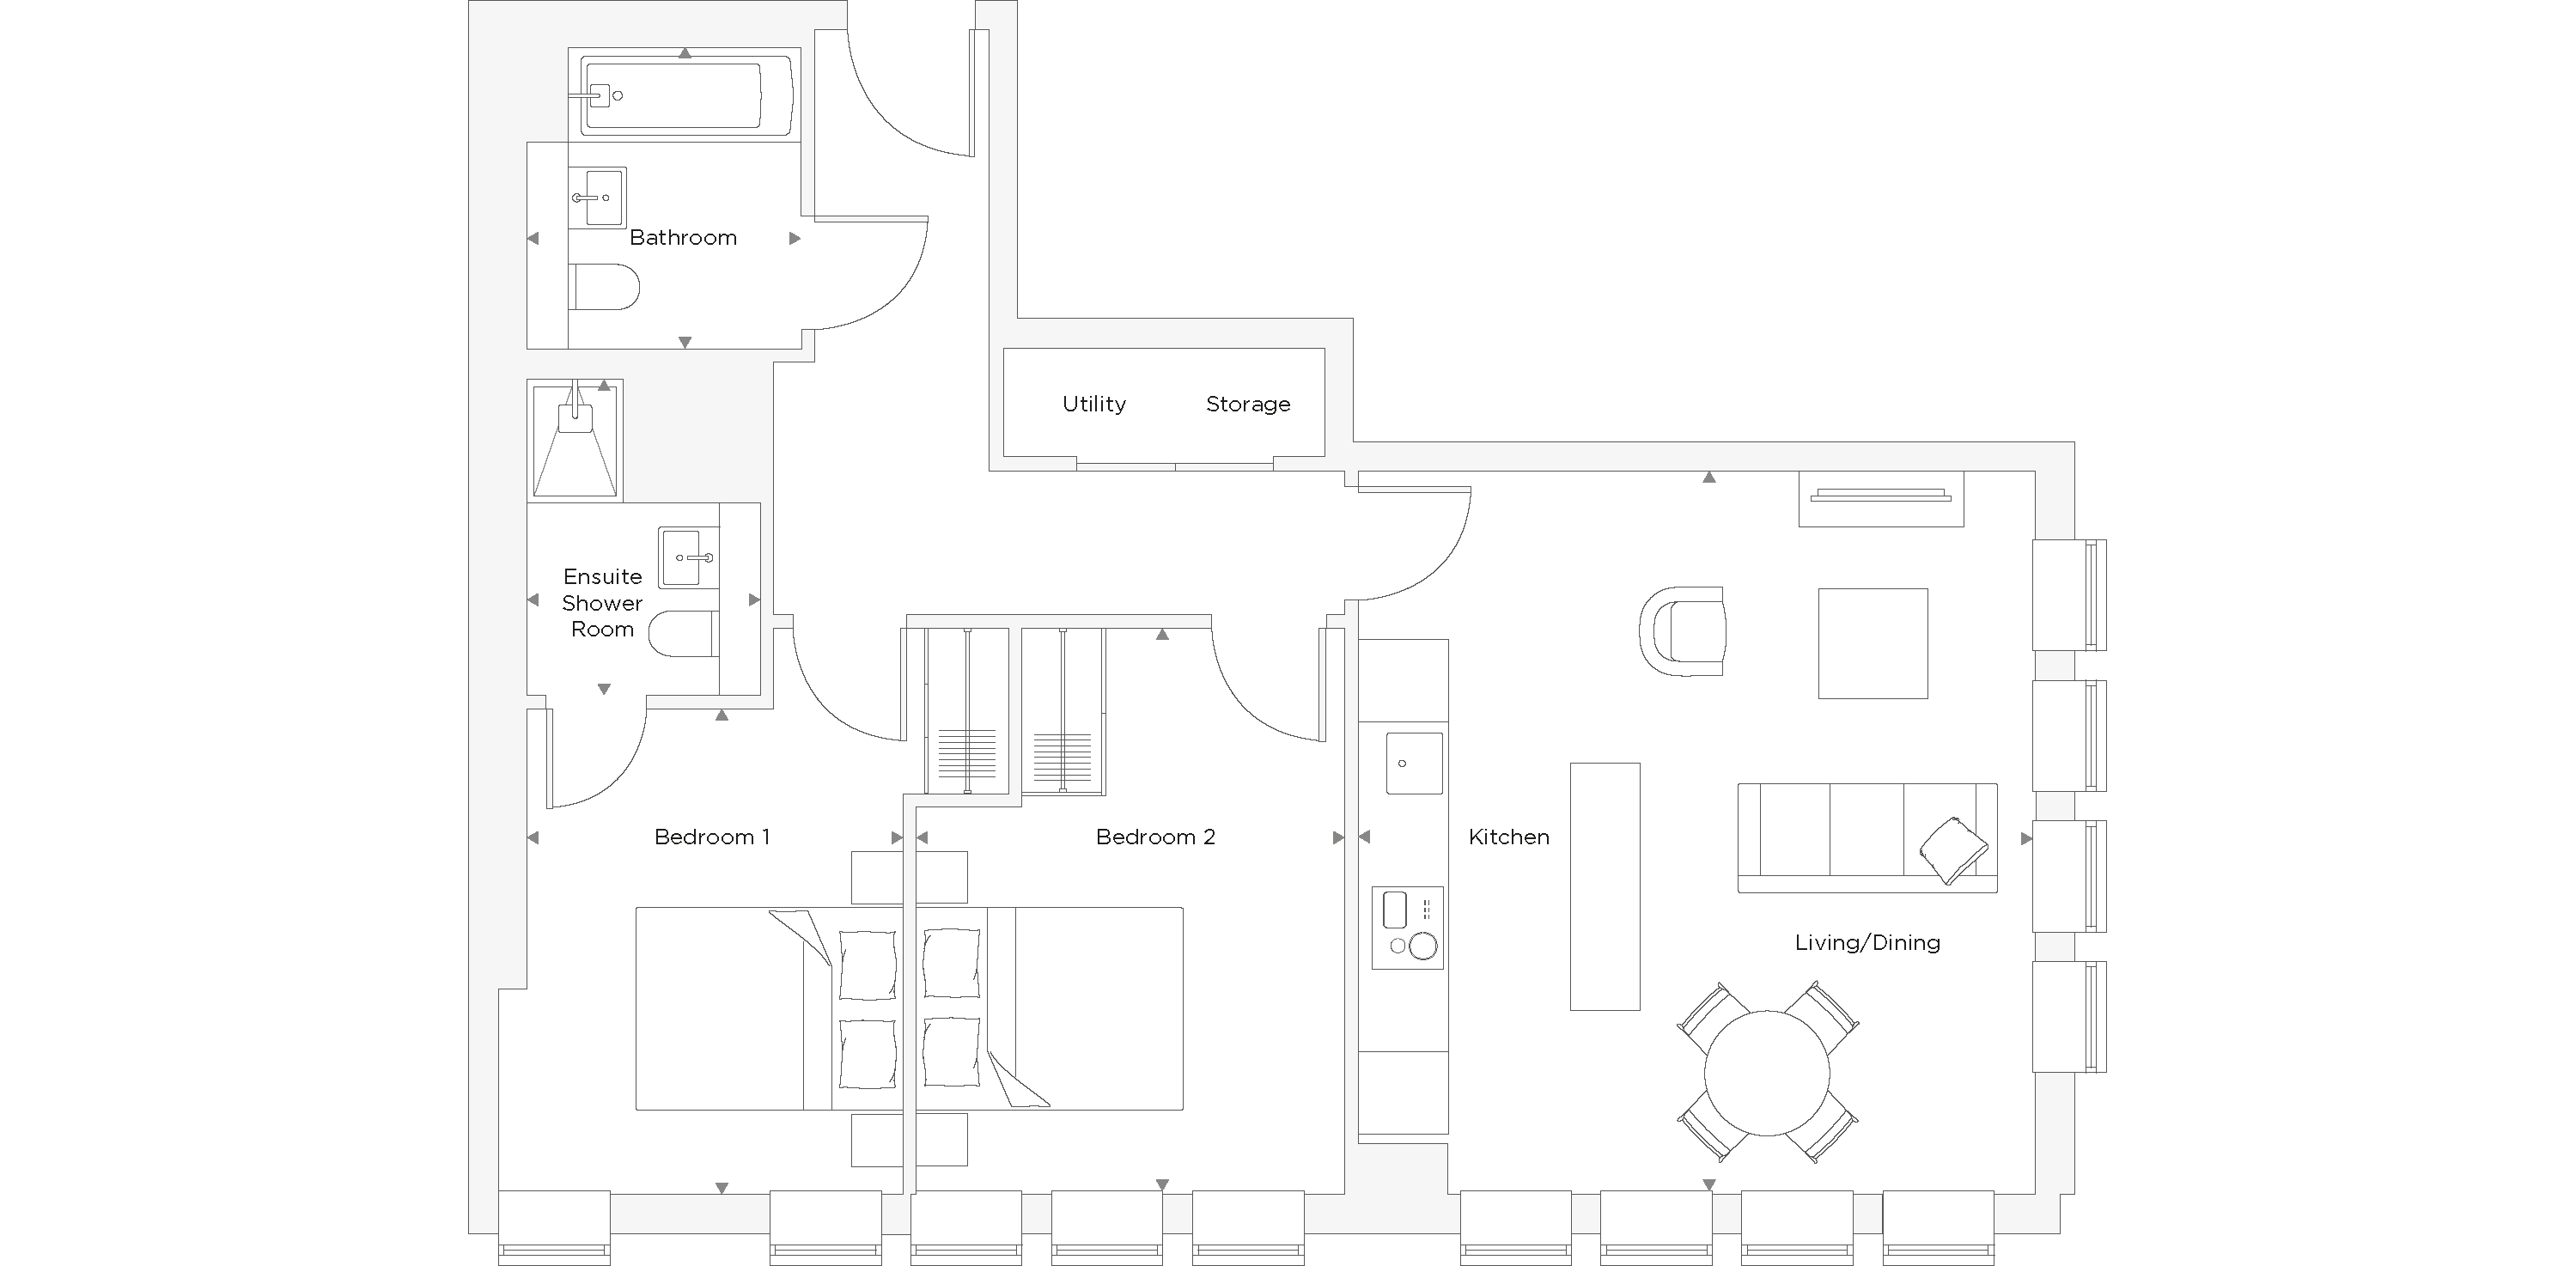 Two Bedroom Apartment C.1.05 Floor Plan